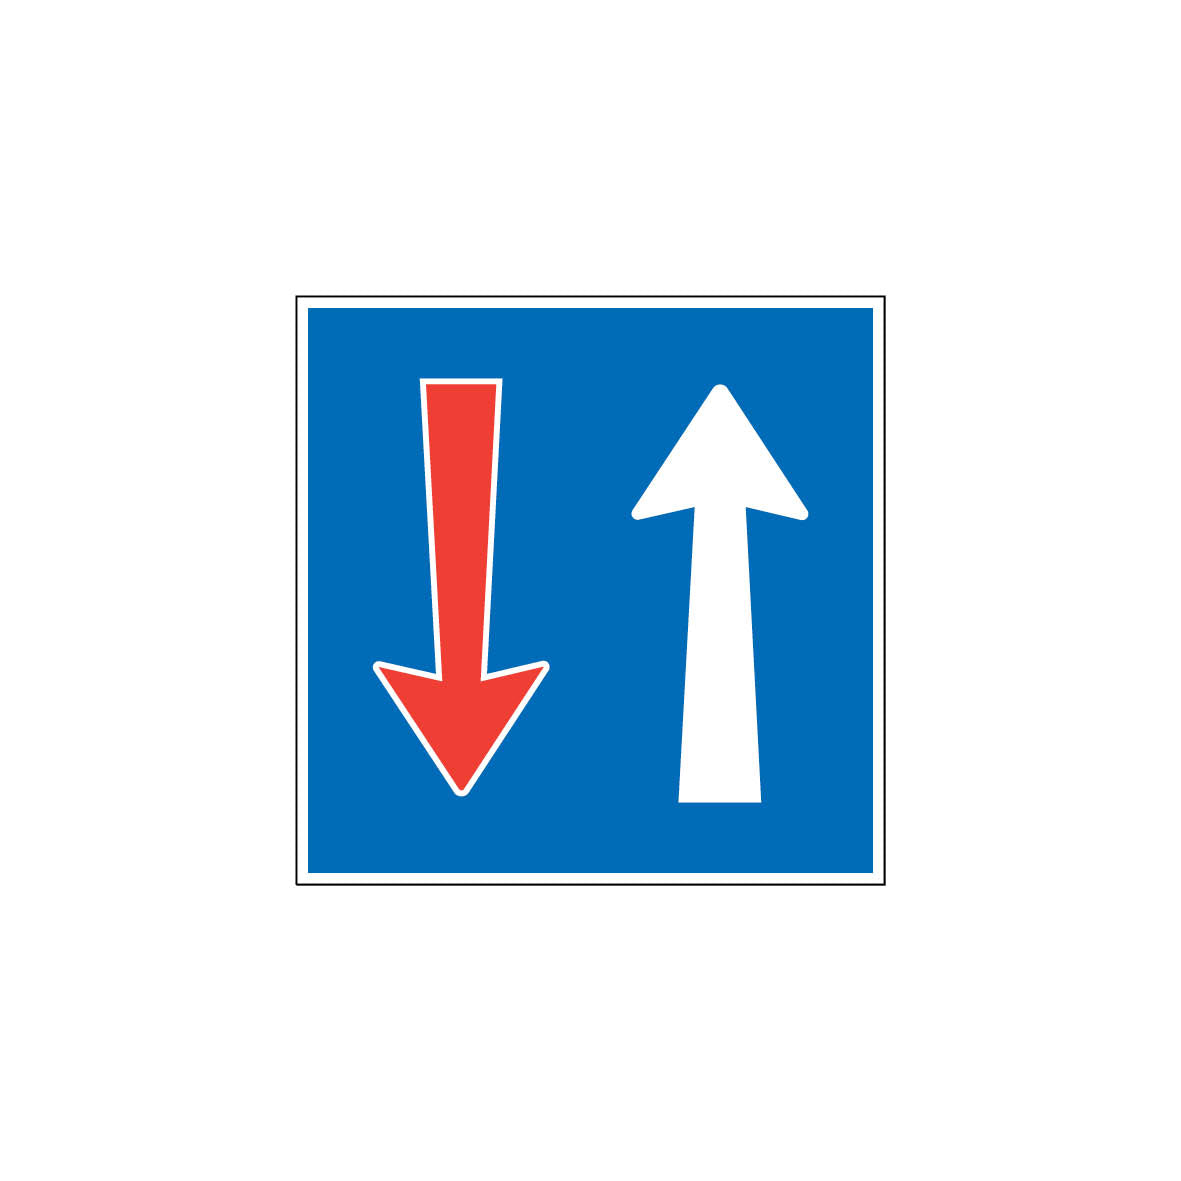 3.10 Vortritt vor dem Gegenverkehr, Vortrittsignale